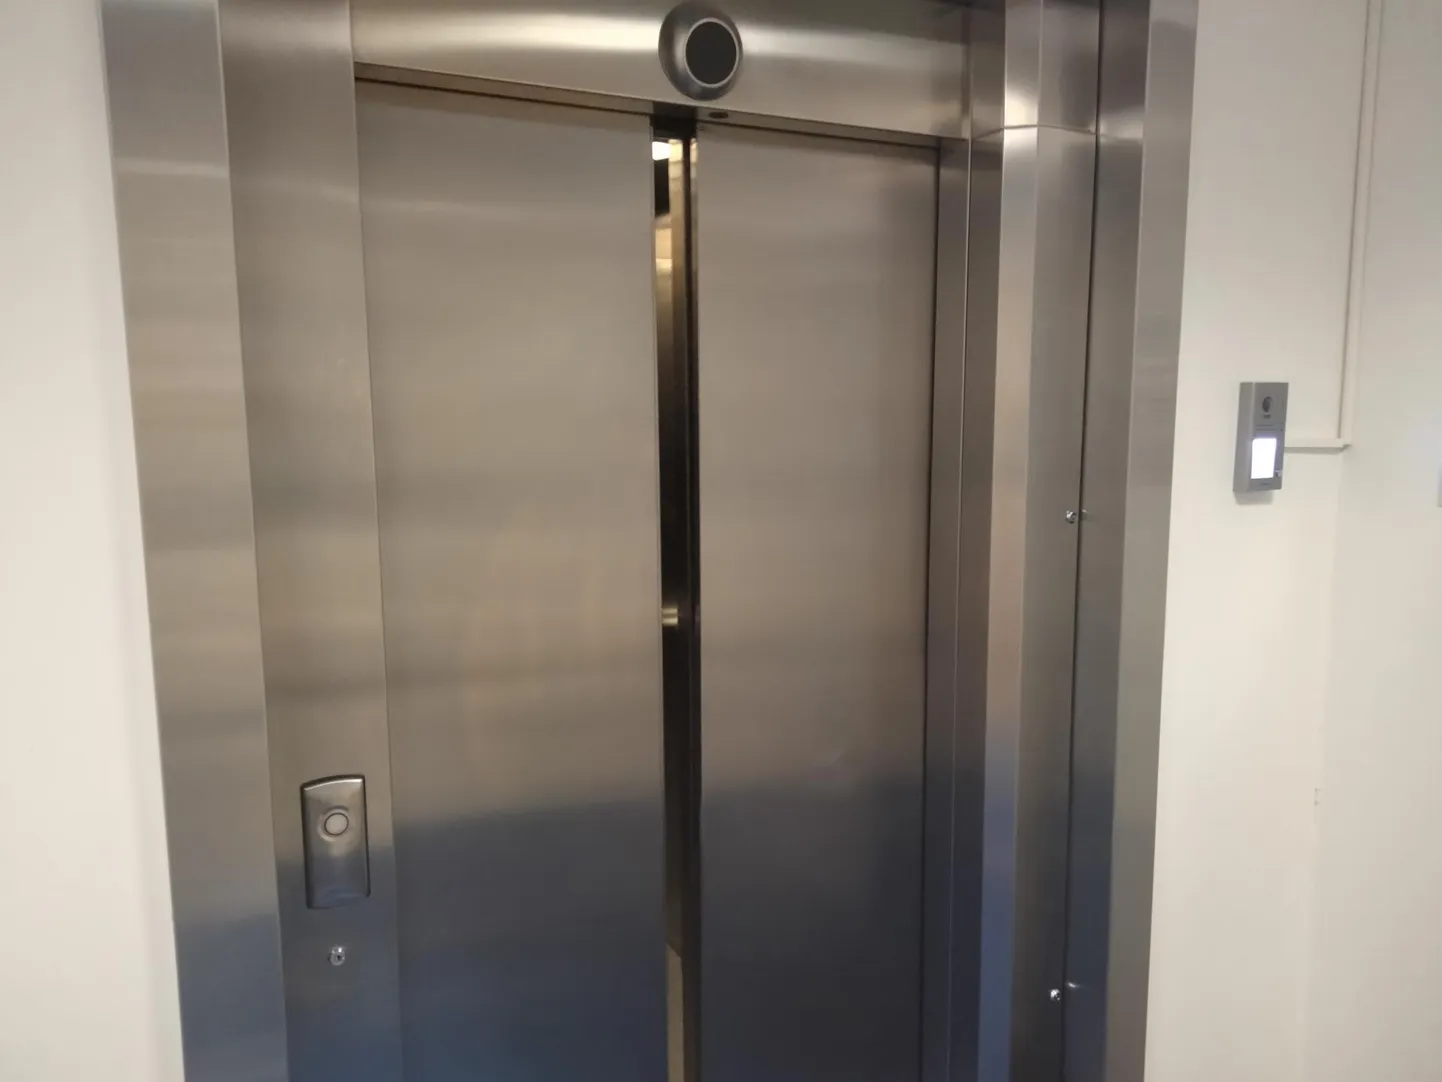 Päästjad käisid abistamas lifti kinni jäänud inimesi. Foto on illustreeriv.